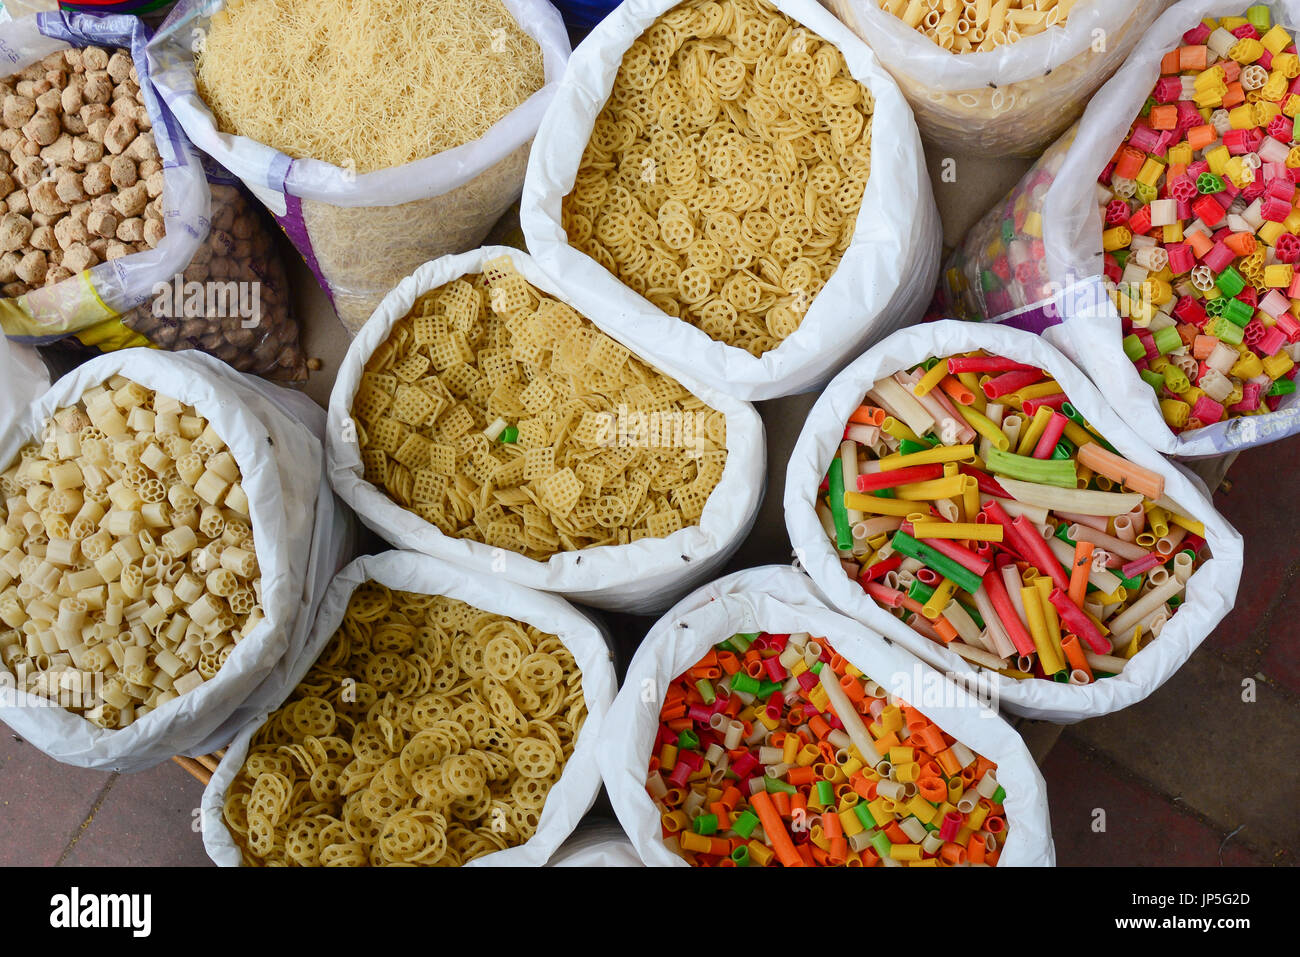 Verkauf von getrockneten Nudeln und Lebensmittel im Chandni Chowk Markt in Alt-Delhi, Indien. Chandni Chowk (Moonlight Square) ist eines der ältesten und am meisten besuchten mar Stockfoto